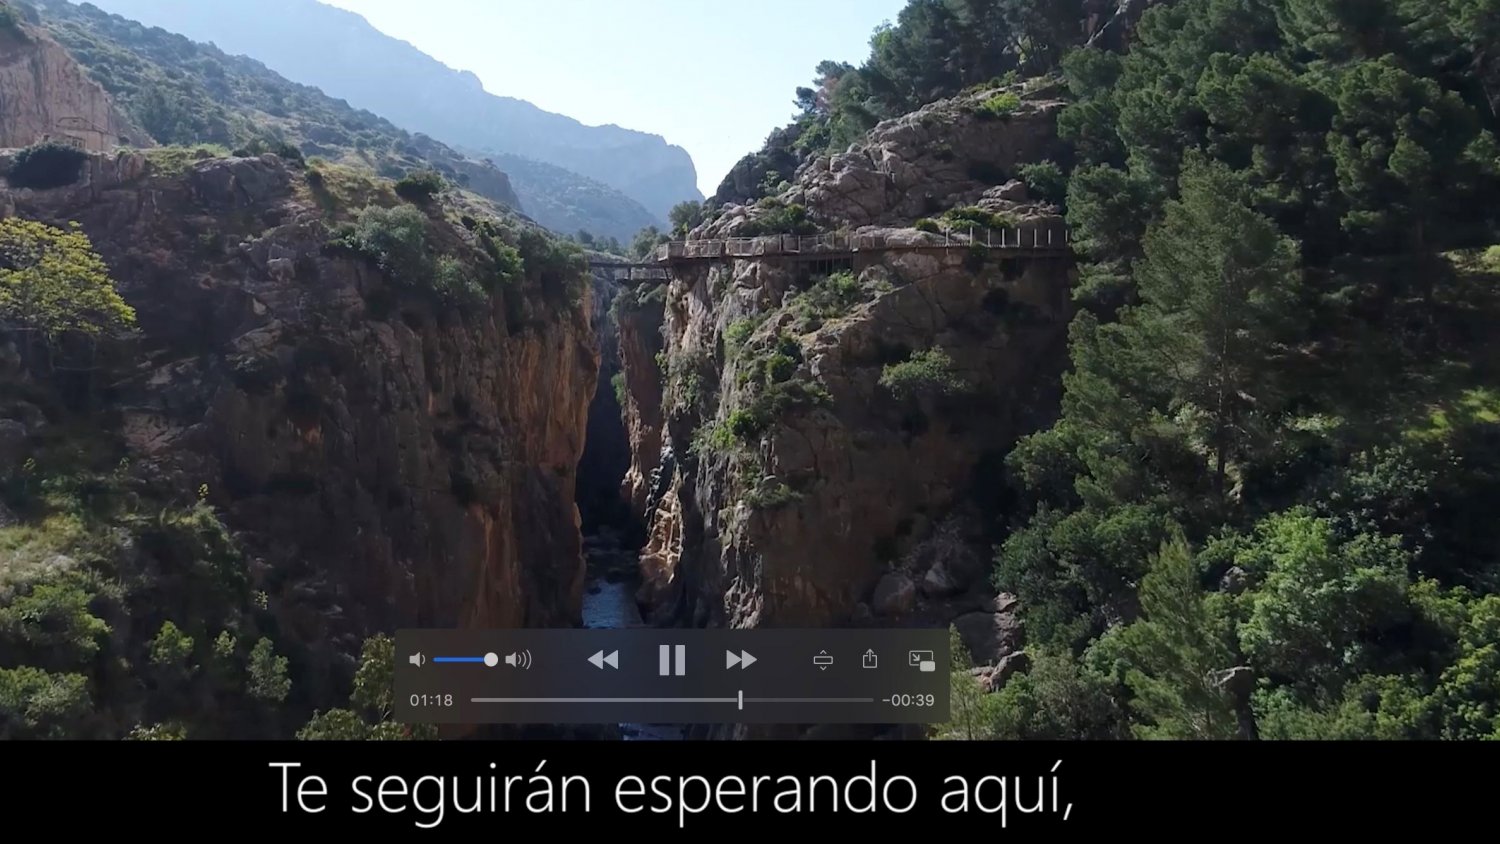 El Caminito del Rey lanza un vídeo en sus redes sociales para agradecer la lucha contra el Covid-19